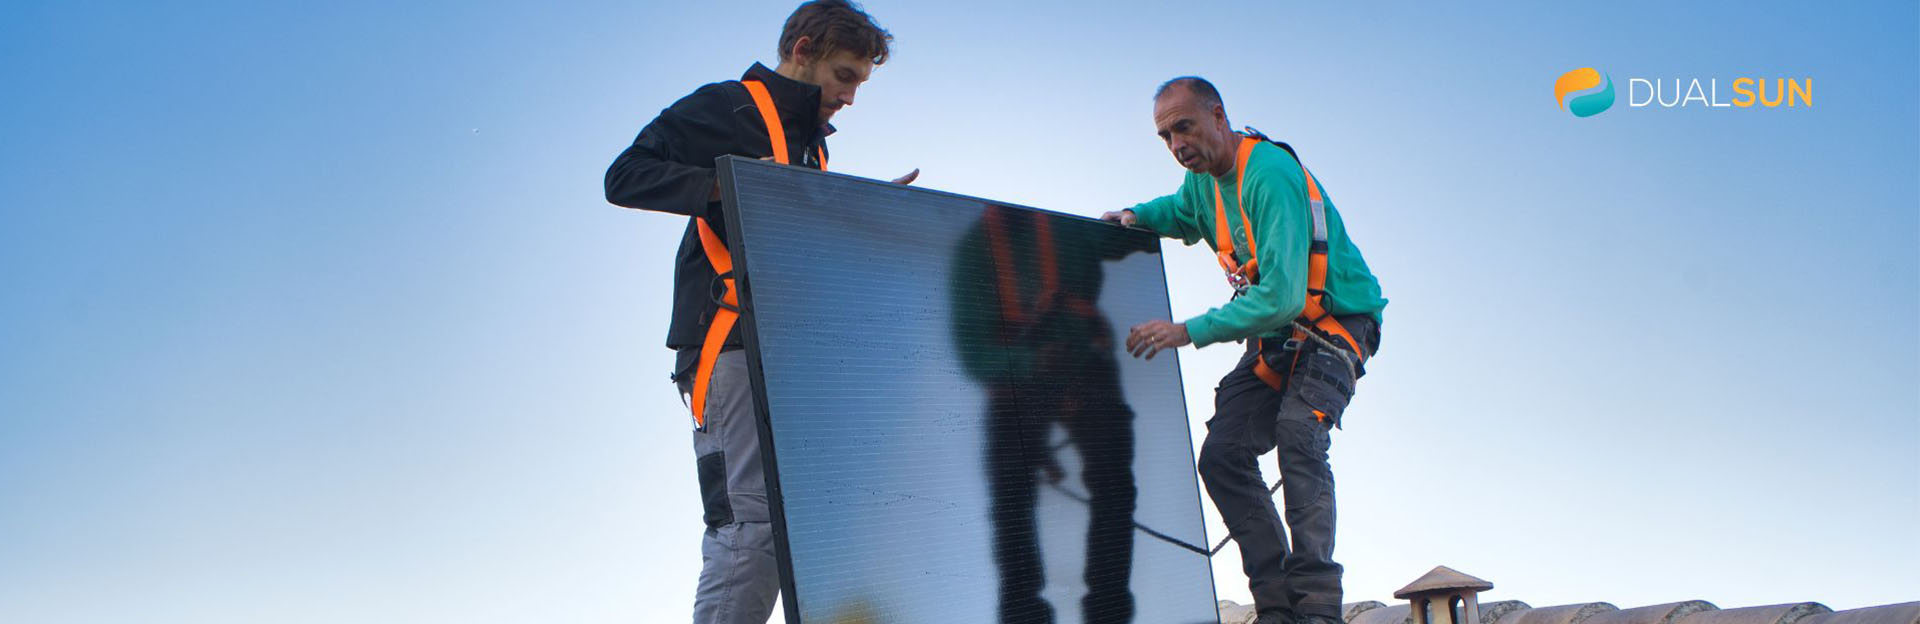 Les panneaux solaires DualSun : On vous dit tout !